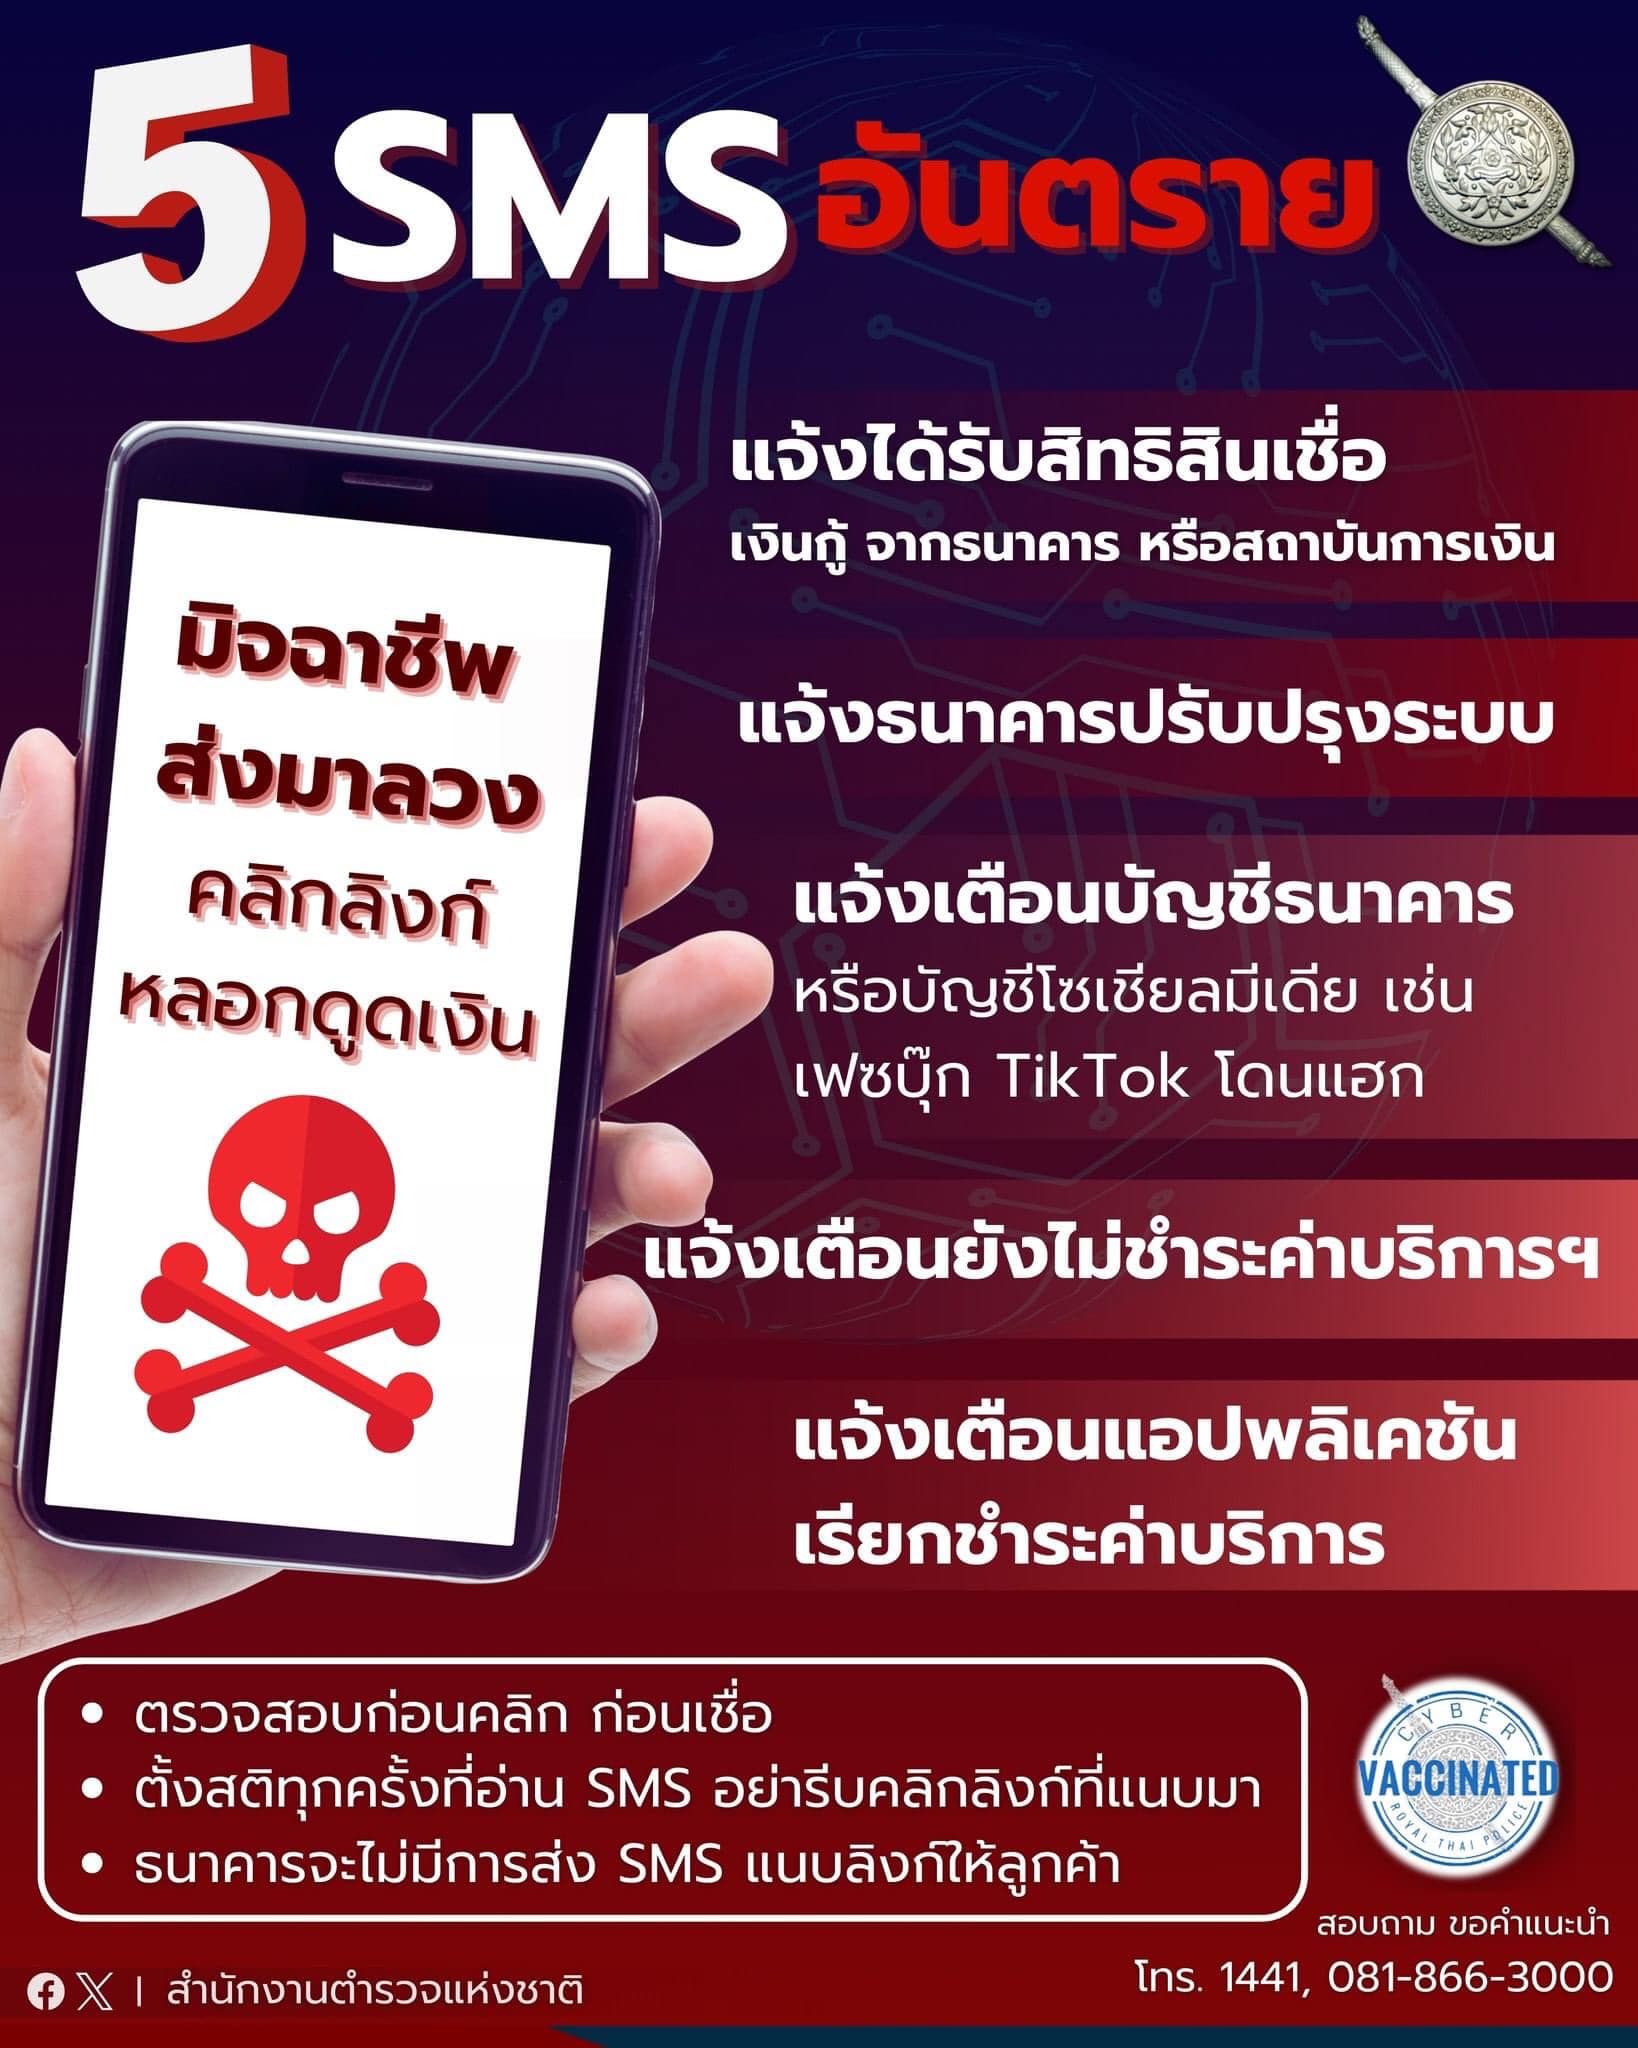 โปรดระวัง!!! 5 SMS อันตราย